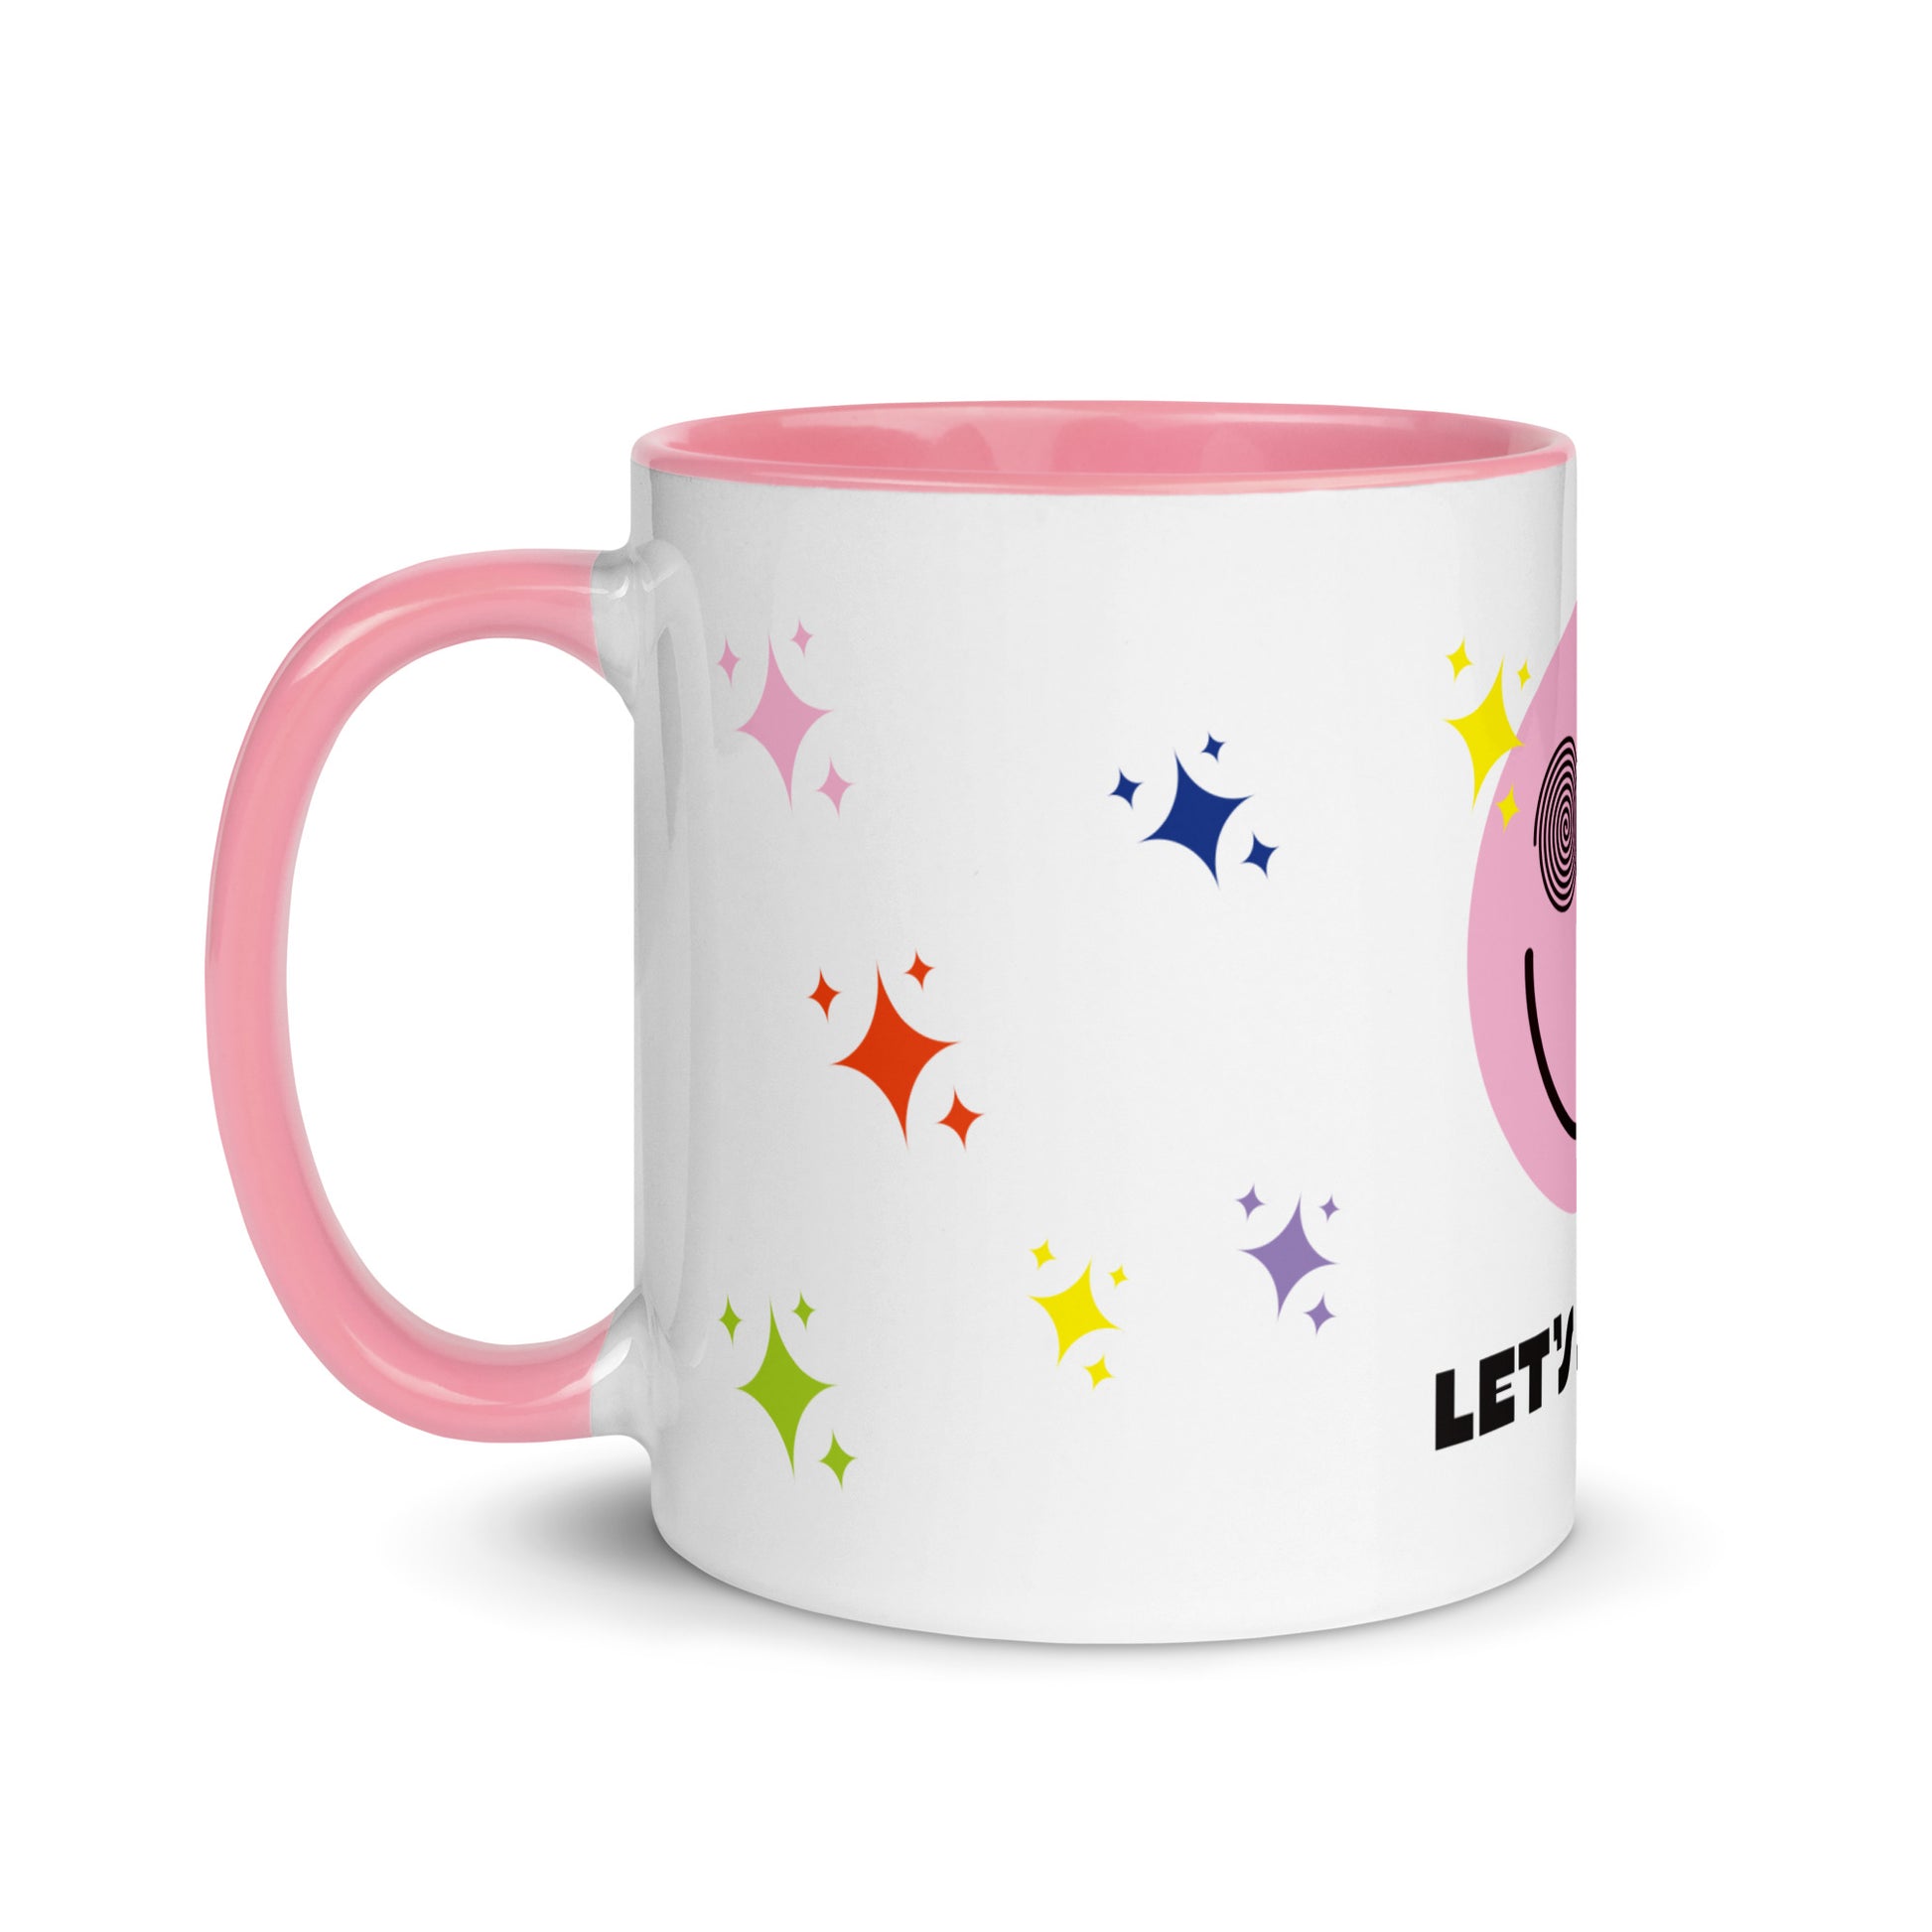 https://shop.joythebaker.com/cdn/shop/products/white-ceramic-mug-with-color-inside-pink-11oz-left-6376b36248b35.jpg?v=1668734946&width=1946